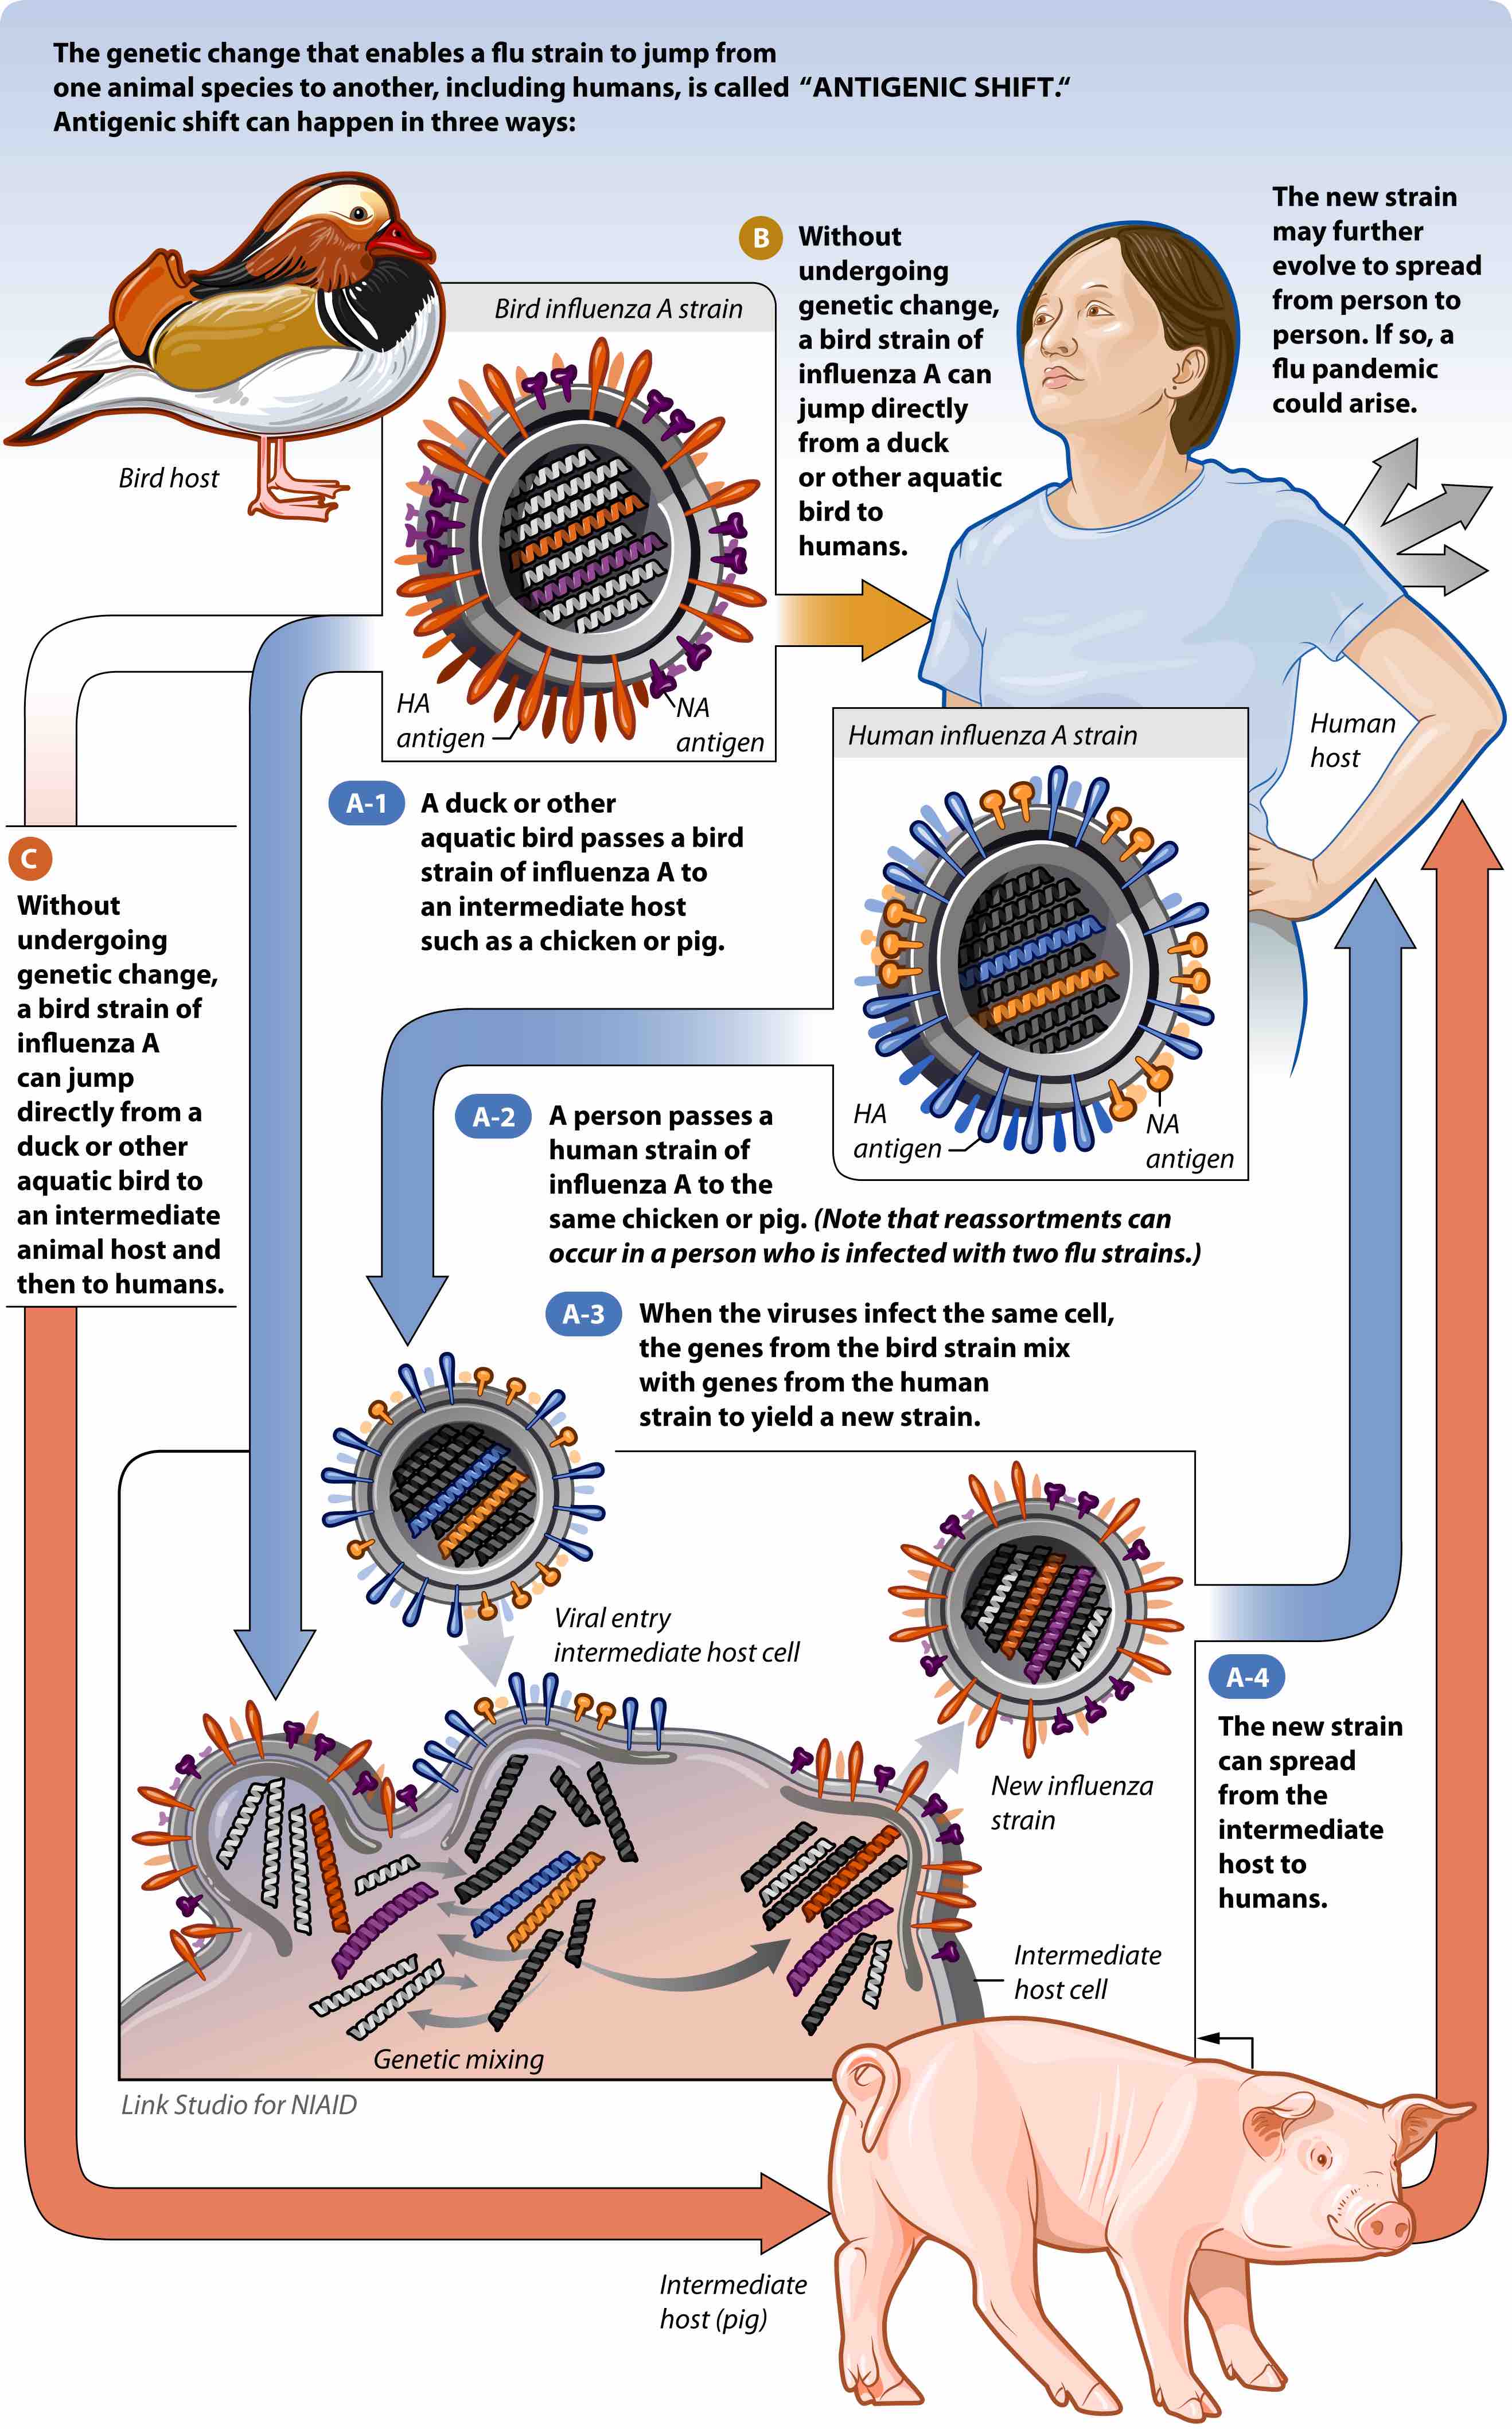 Pathogen emergence by antigenic shift